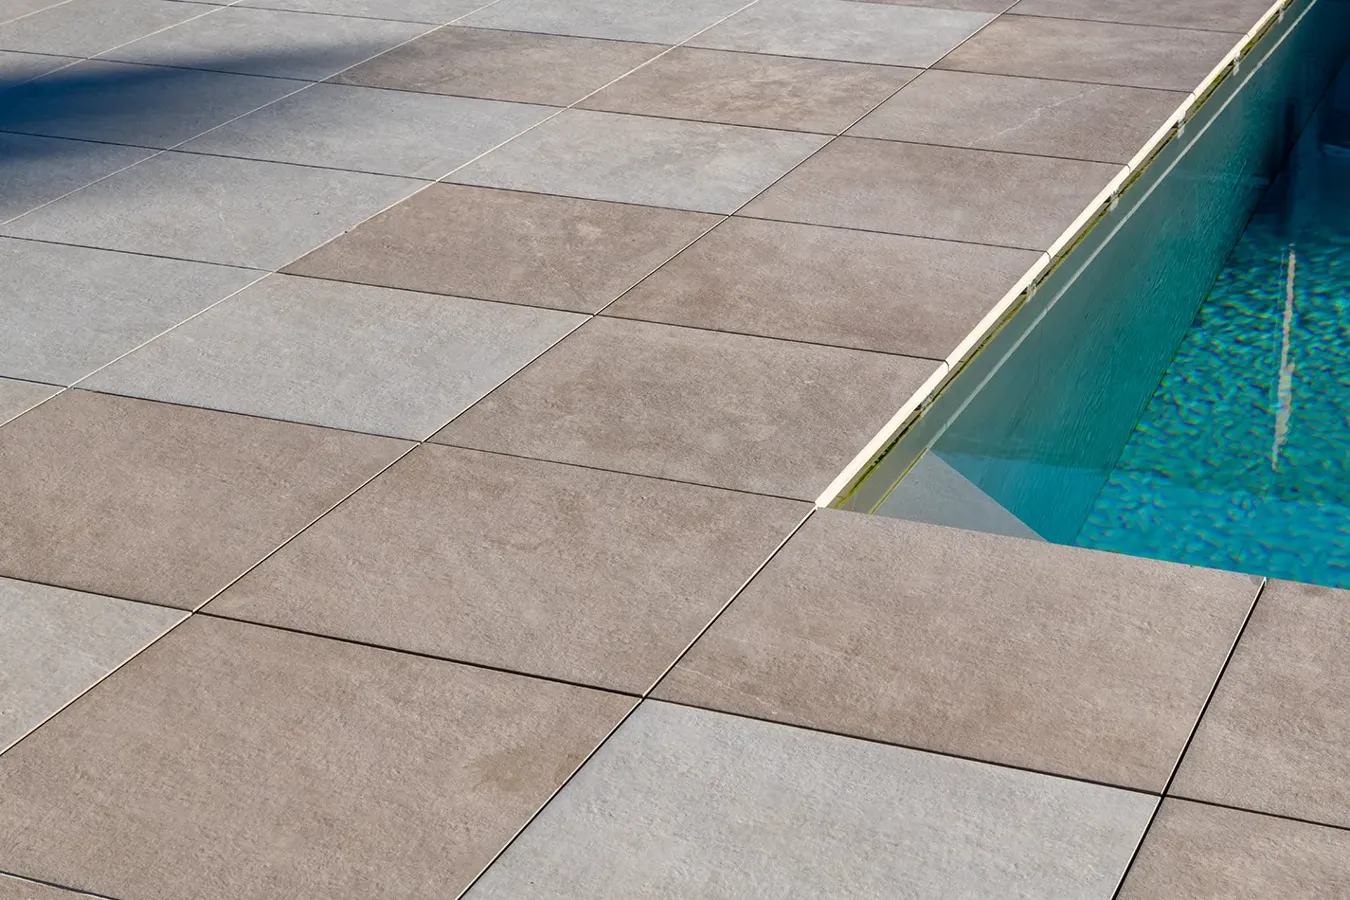 Bordo piscina con pavimentazione in gres porcellanato antiscivolo effetto pietra.